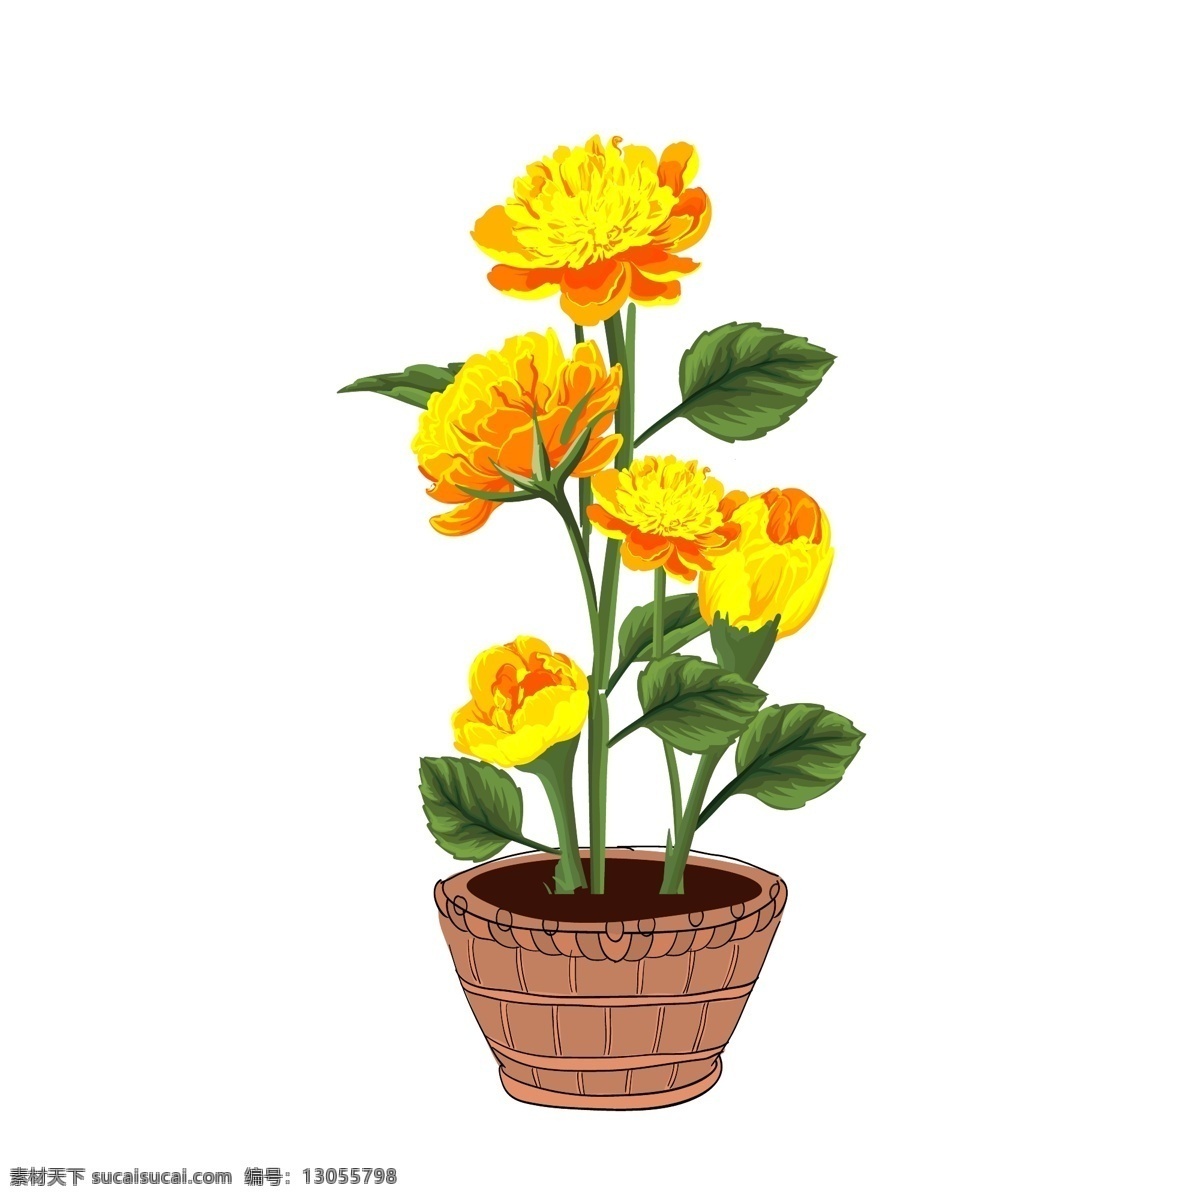 手绘 植物 盆景 金黄色 美丽 花卉 绿叶